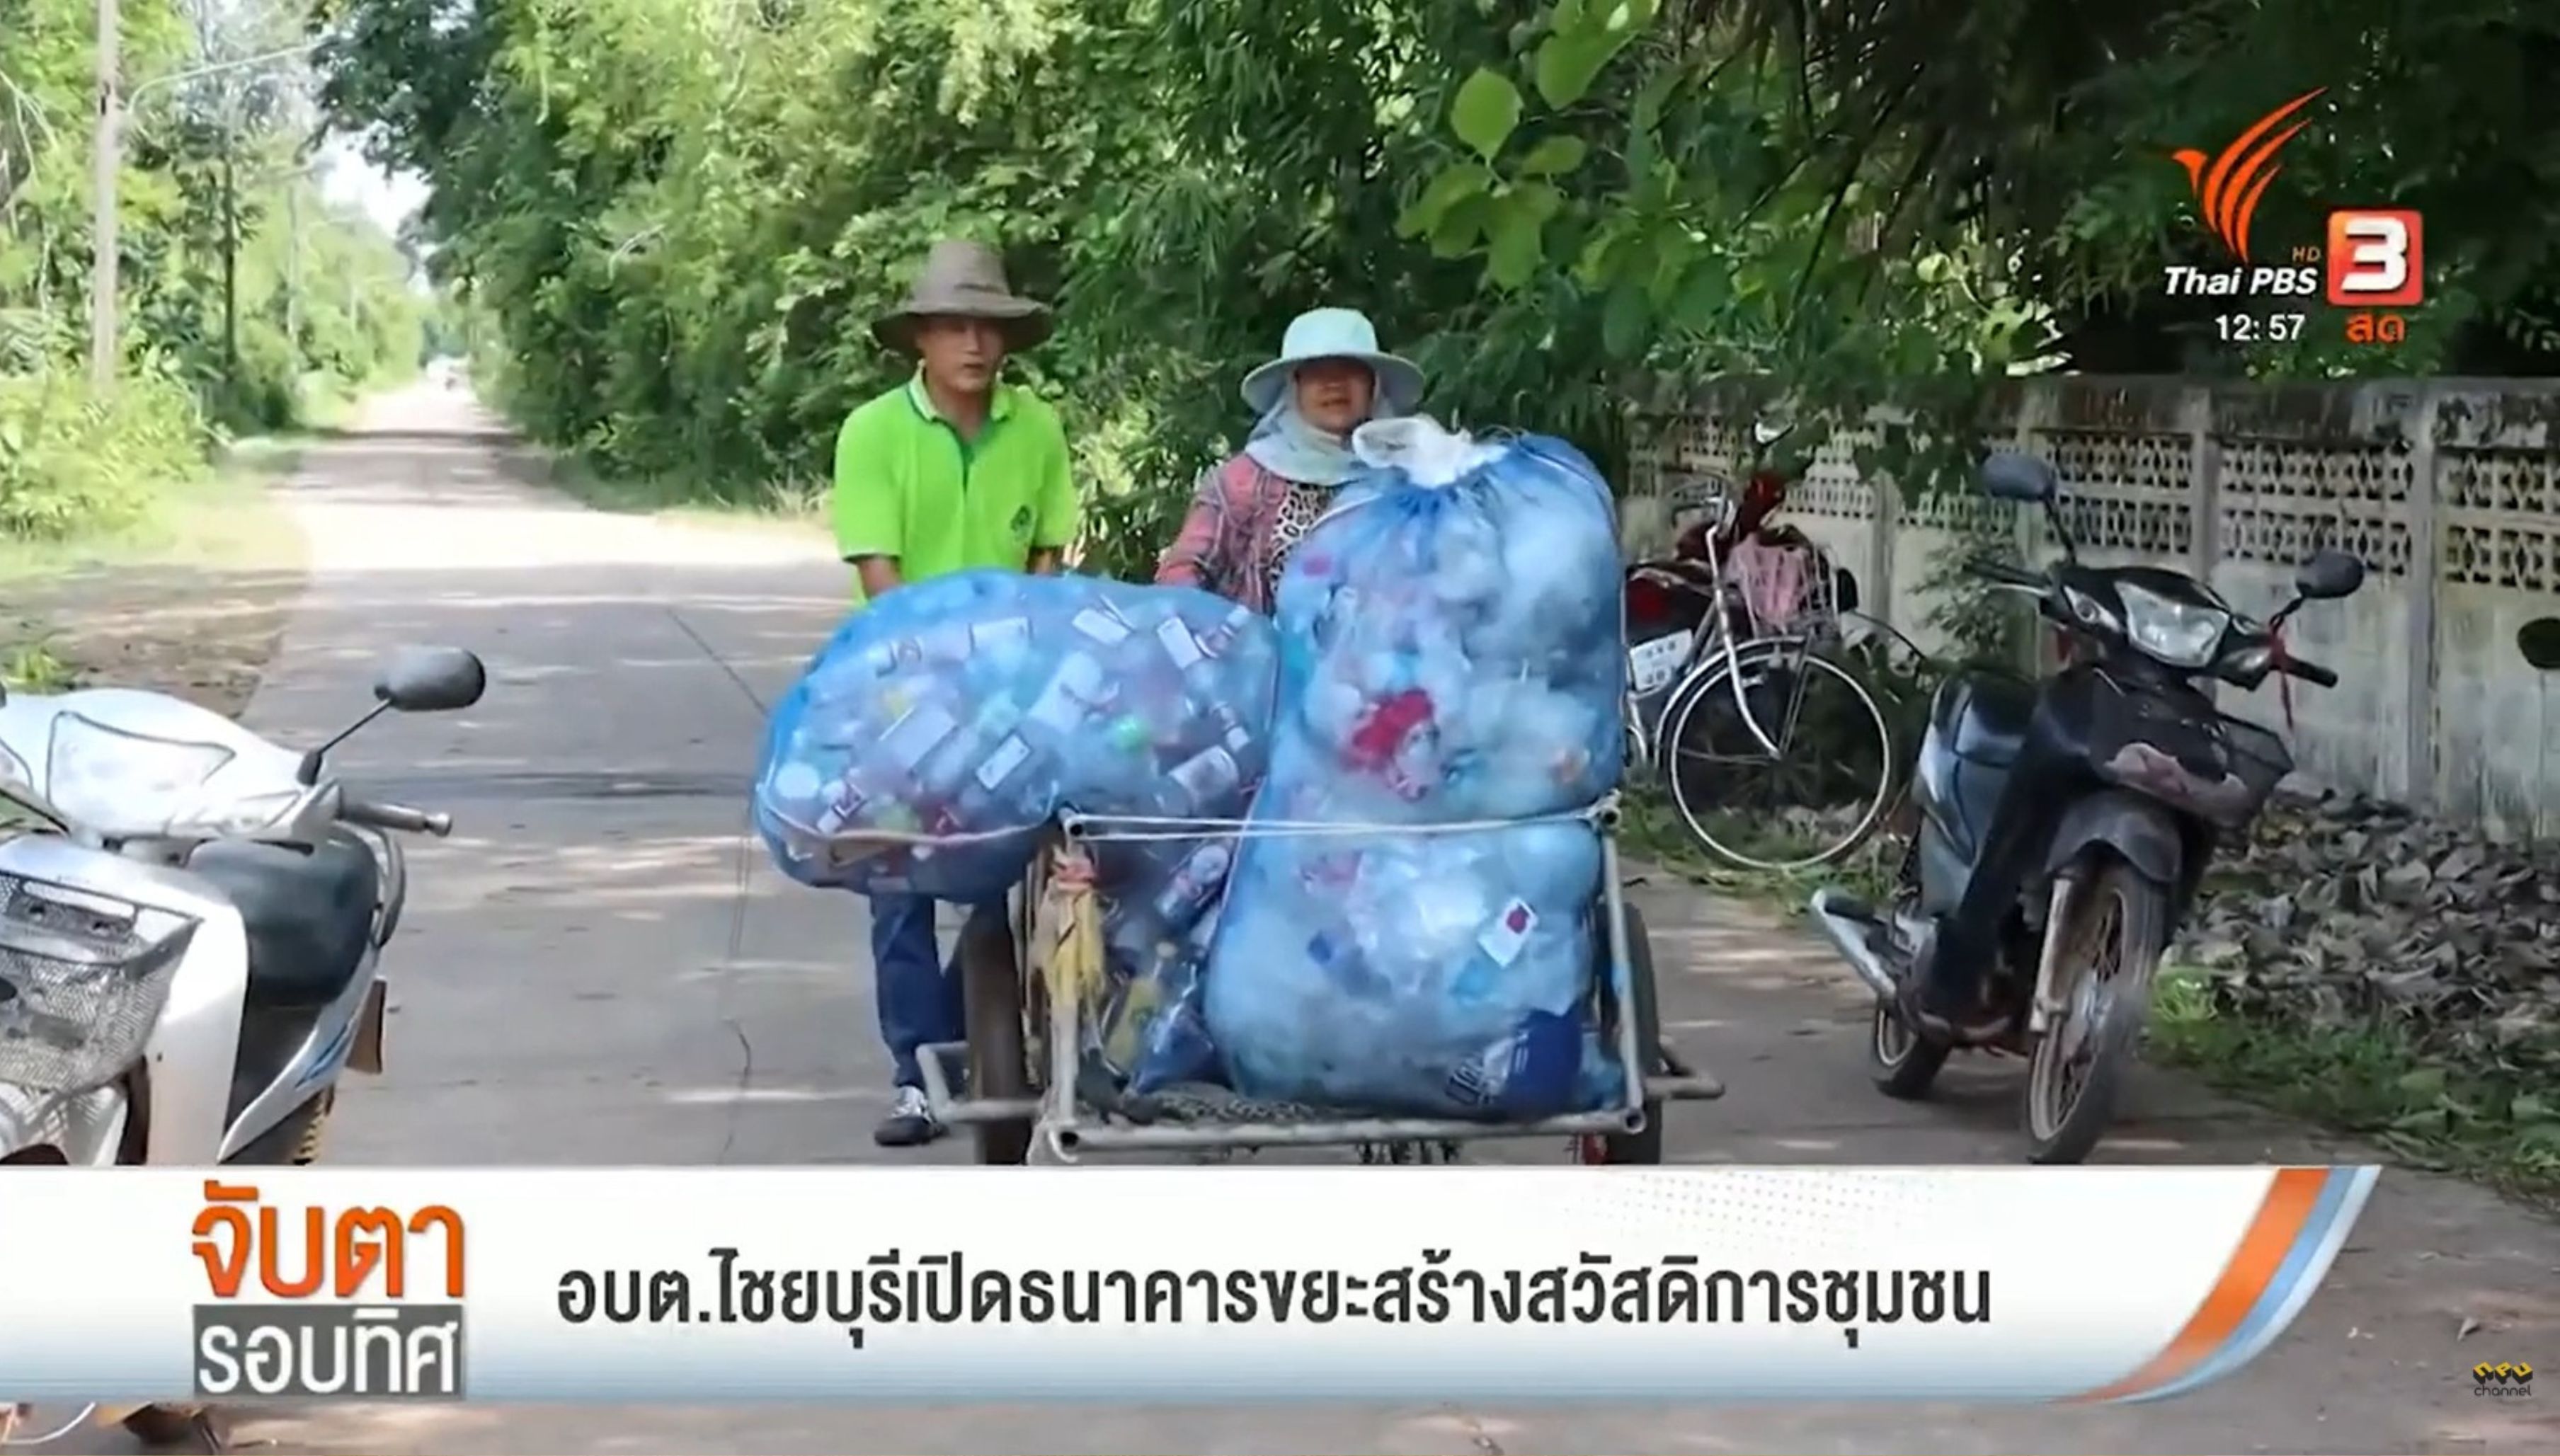 [ Thai PBS ] ม.นครพนม สร้างพื้นที่ต้นแบบนำร่อง อบต.ไชยบุรี อ.ท่าอุเทน จ.นครพนม เปิดธนาคารขยะสร้างสวัสดิการชุมชน